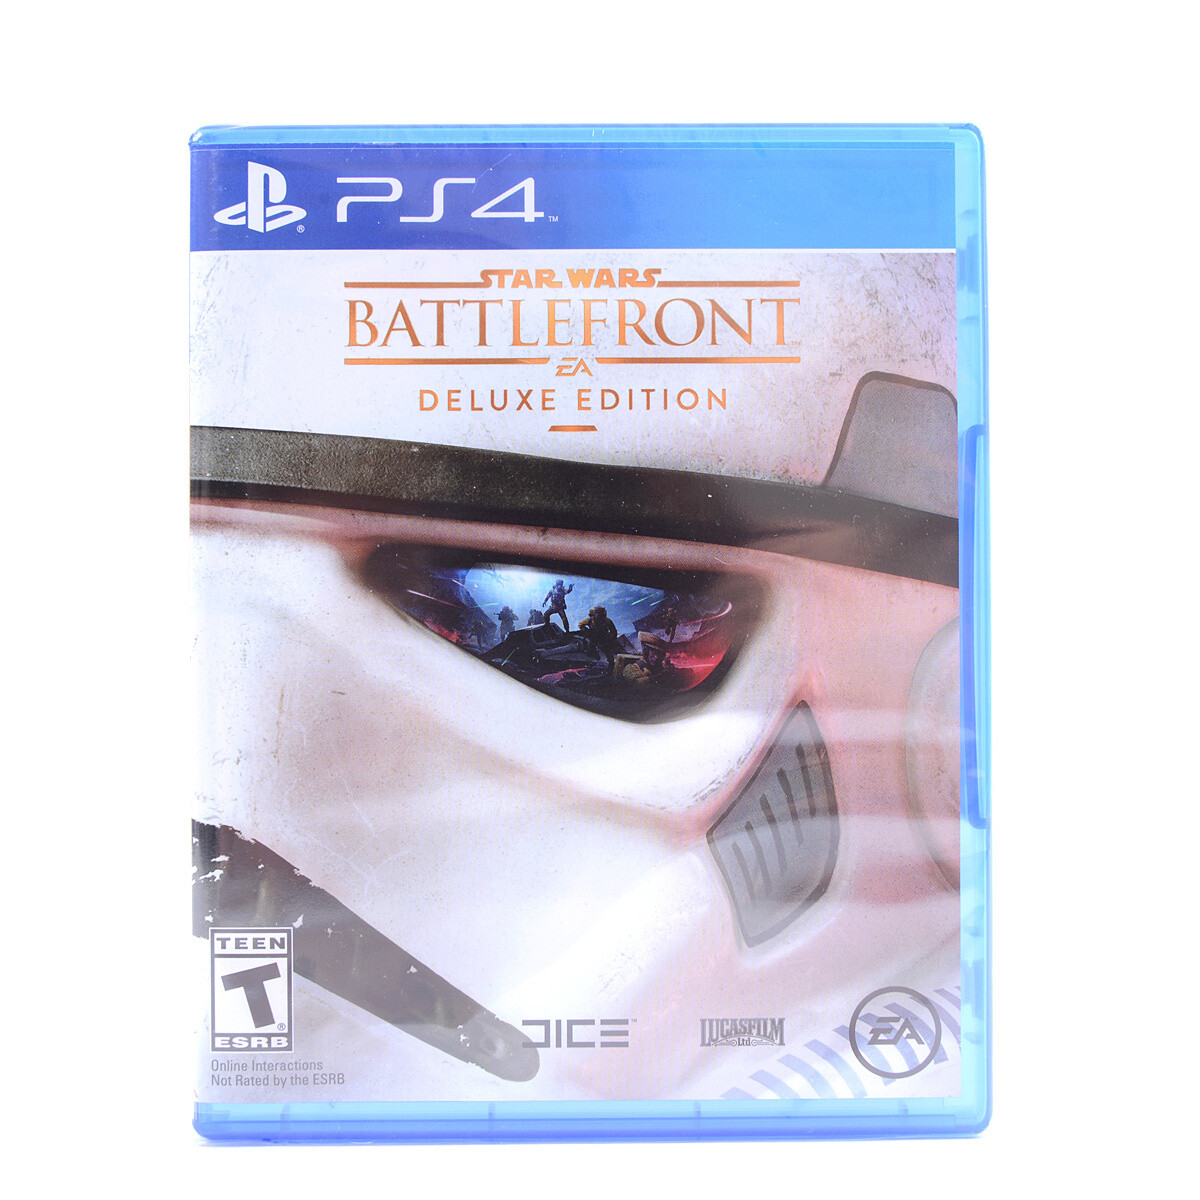 tragt Guggenheim Museum beskæftigelse Star Wars Battlefront Deluxe Edition (PS4) - Tokyo Otaku Mode (TOM)